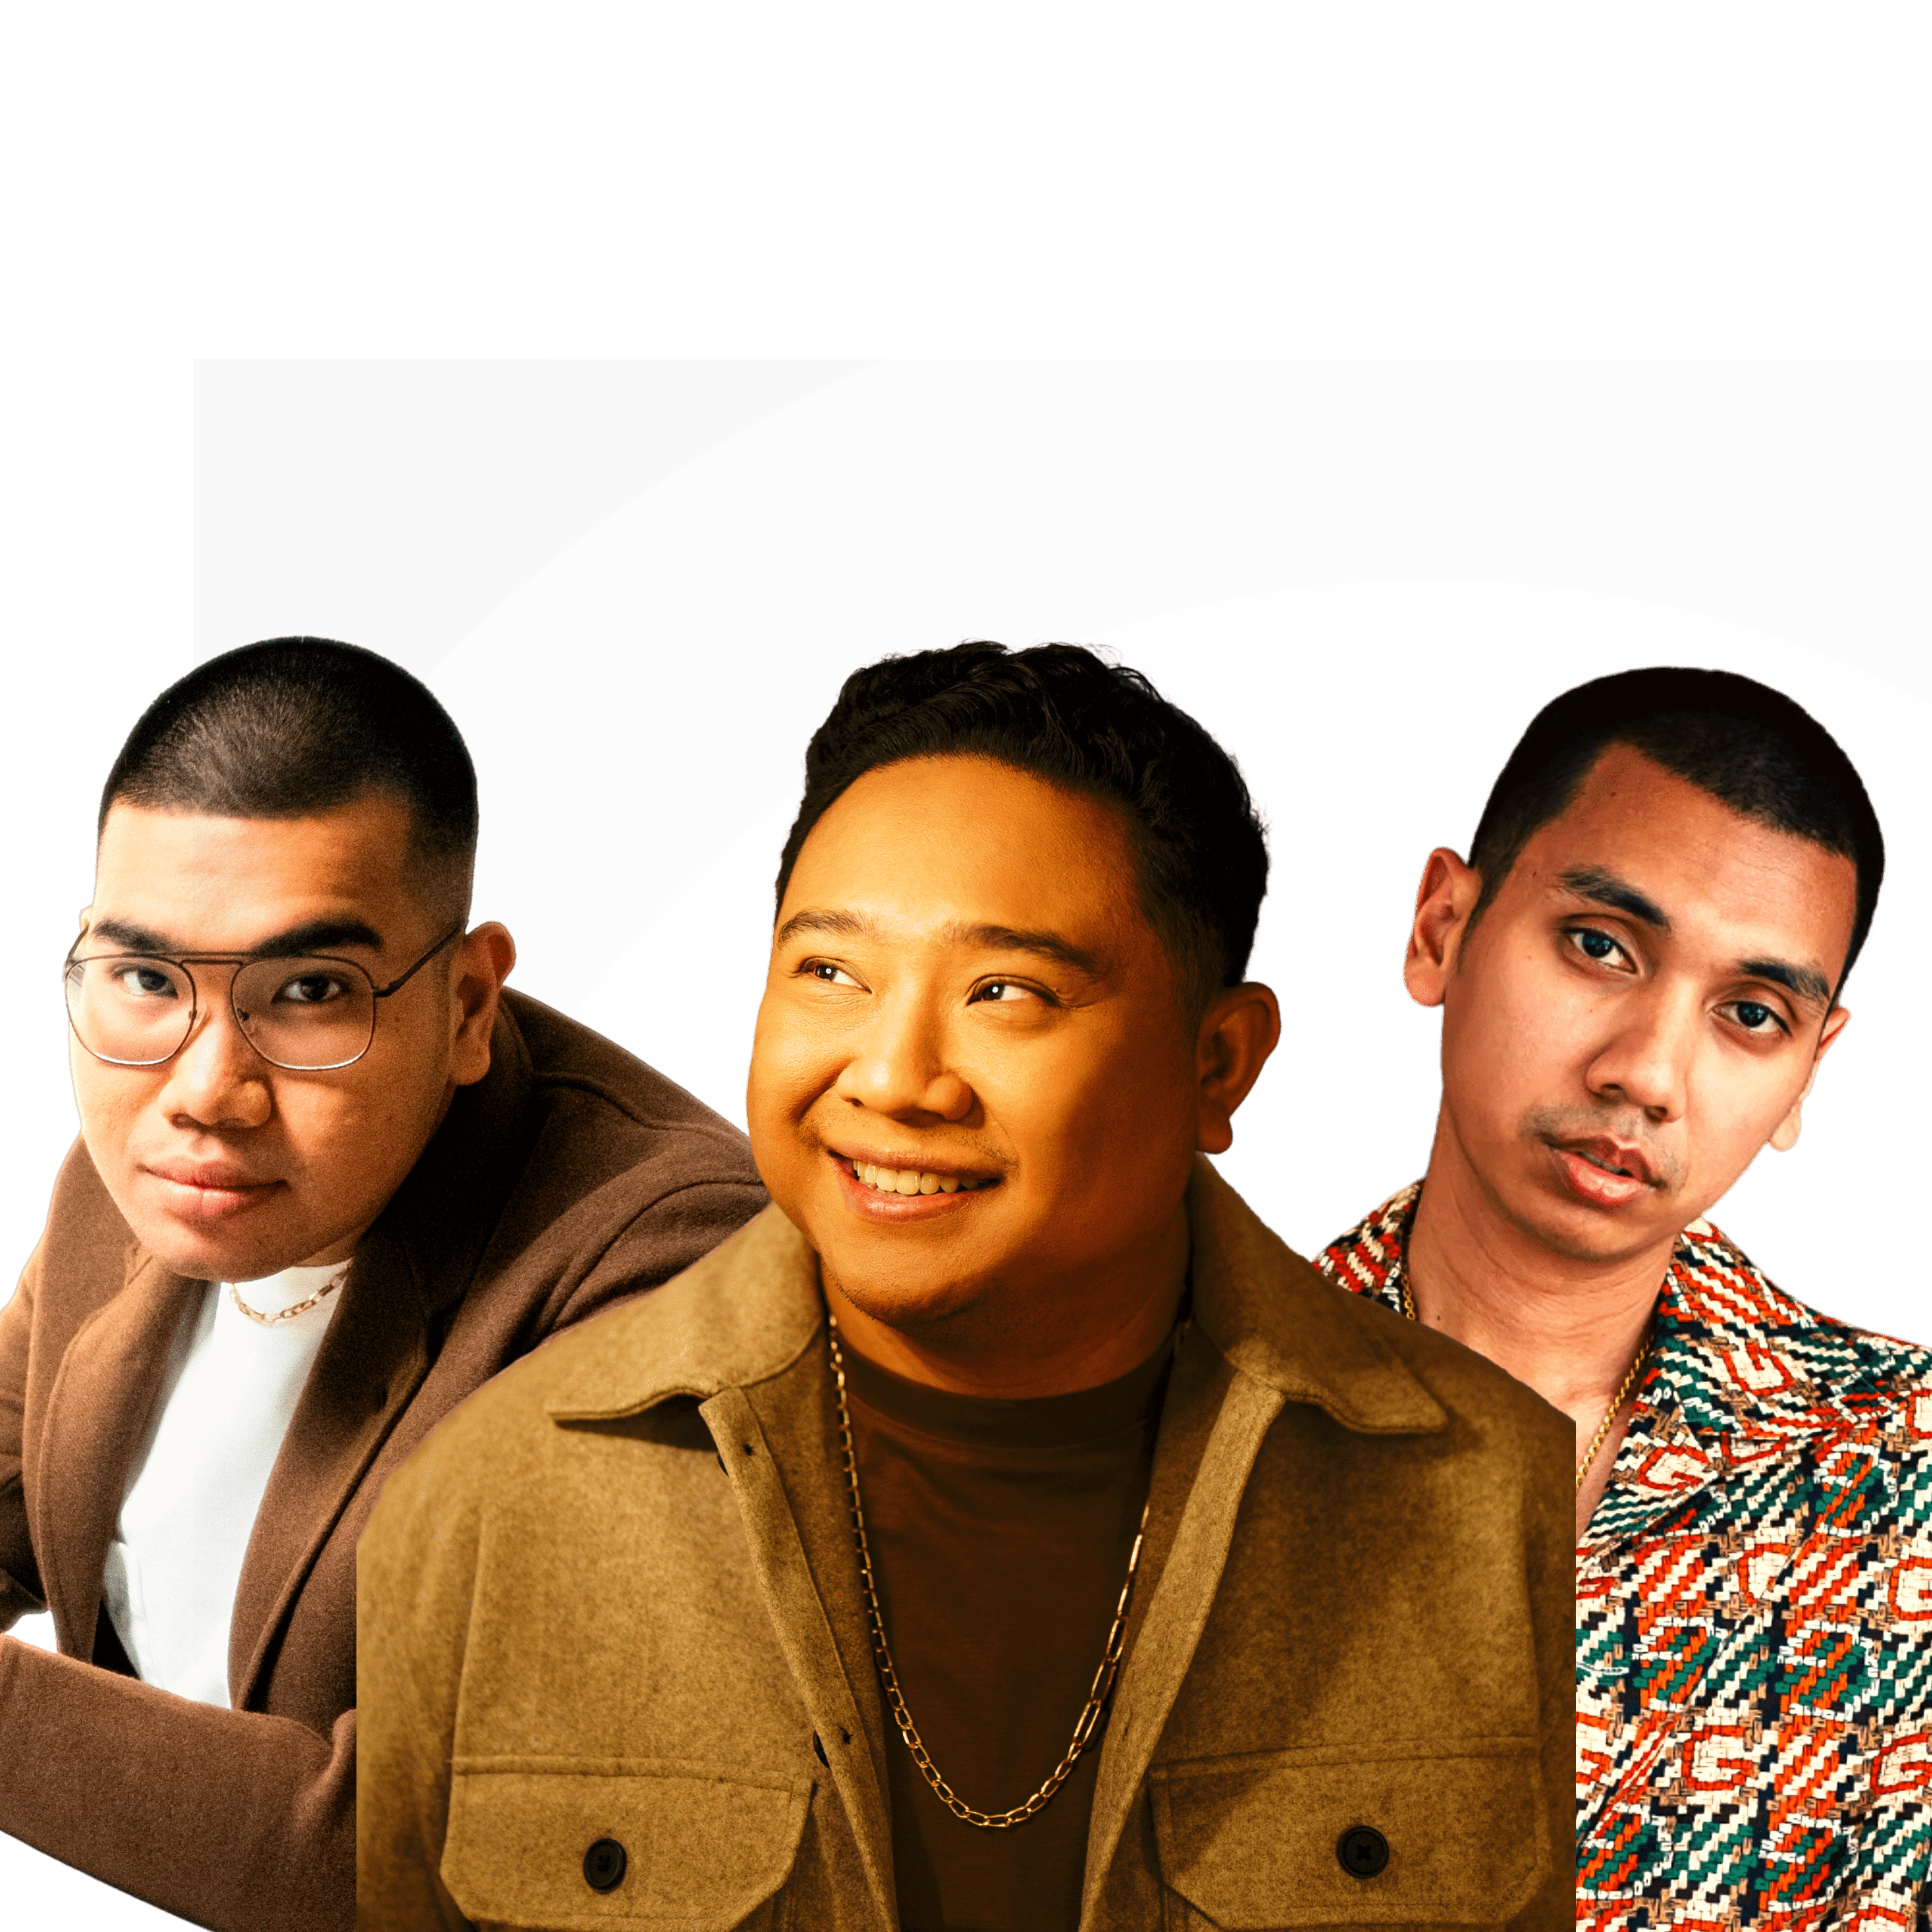 Ajak Kaleb J & Rayi Putra, Belanegara Abe Rilis Single 'Sumthin Bout Love’